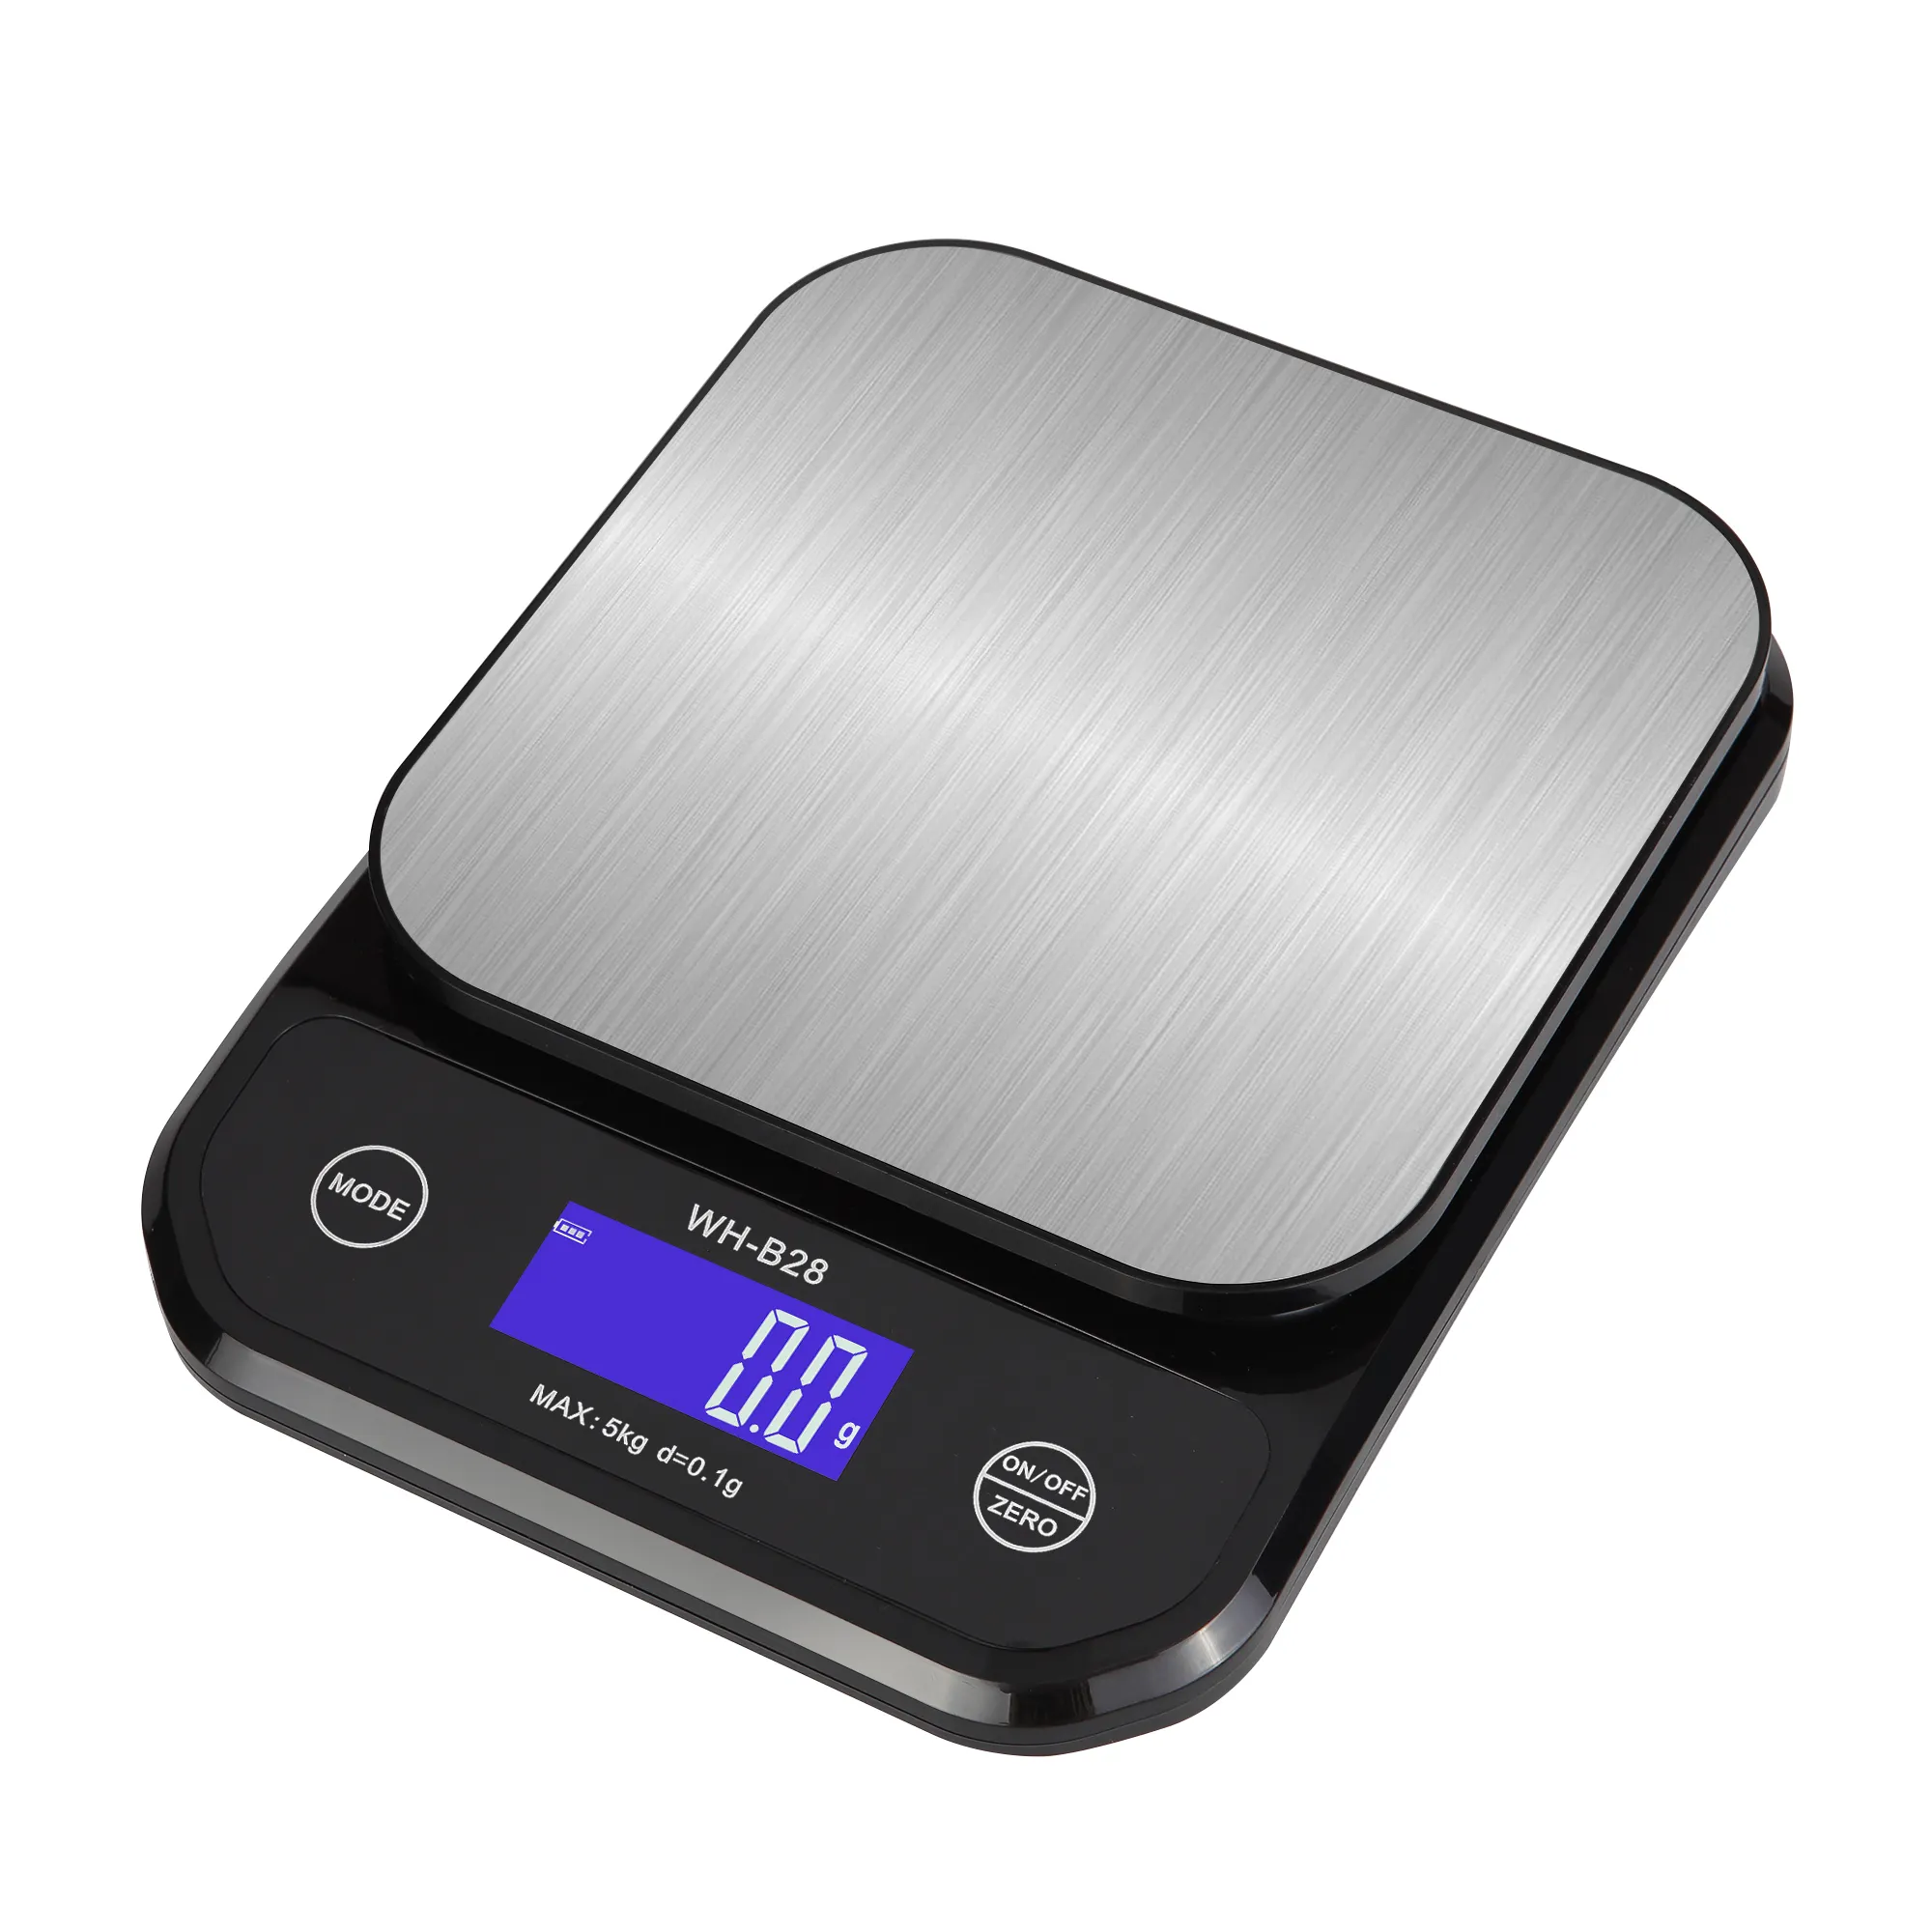 Su geçirmez mutfak terazisi dijital toptan USB şarj edilebilir elektronik gıda ölçeği 5kg 0.1g WH-B28